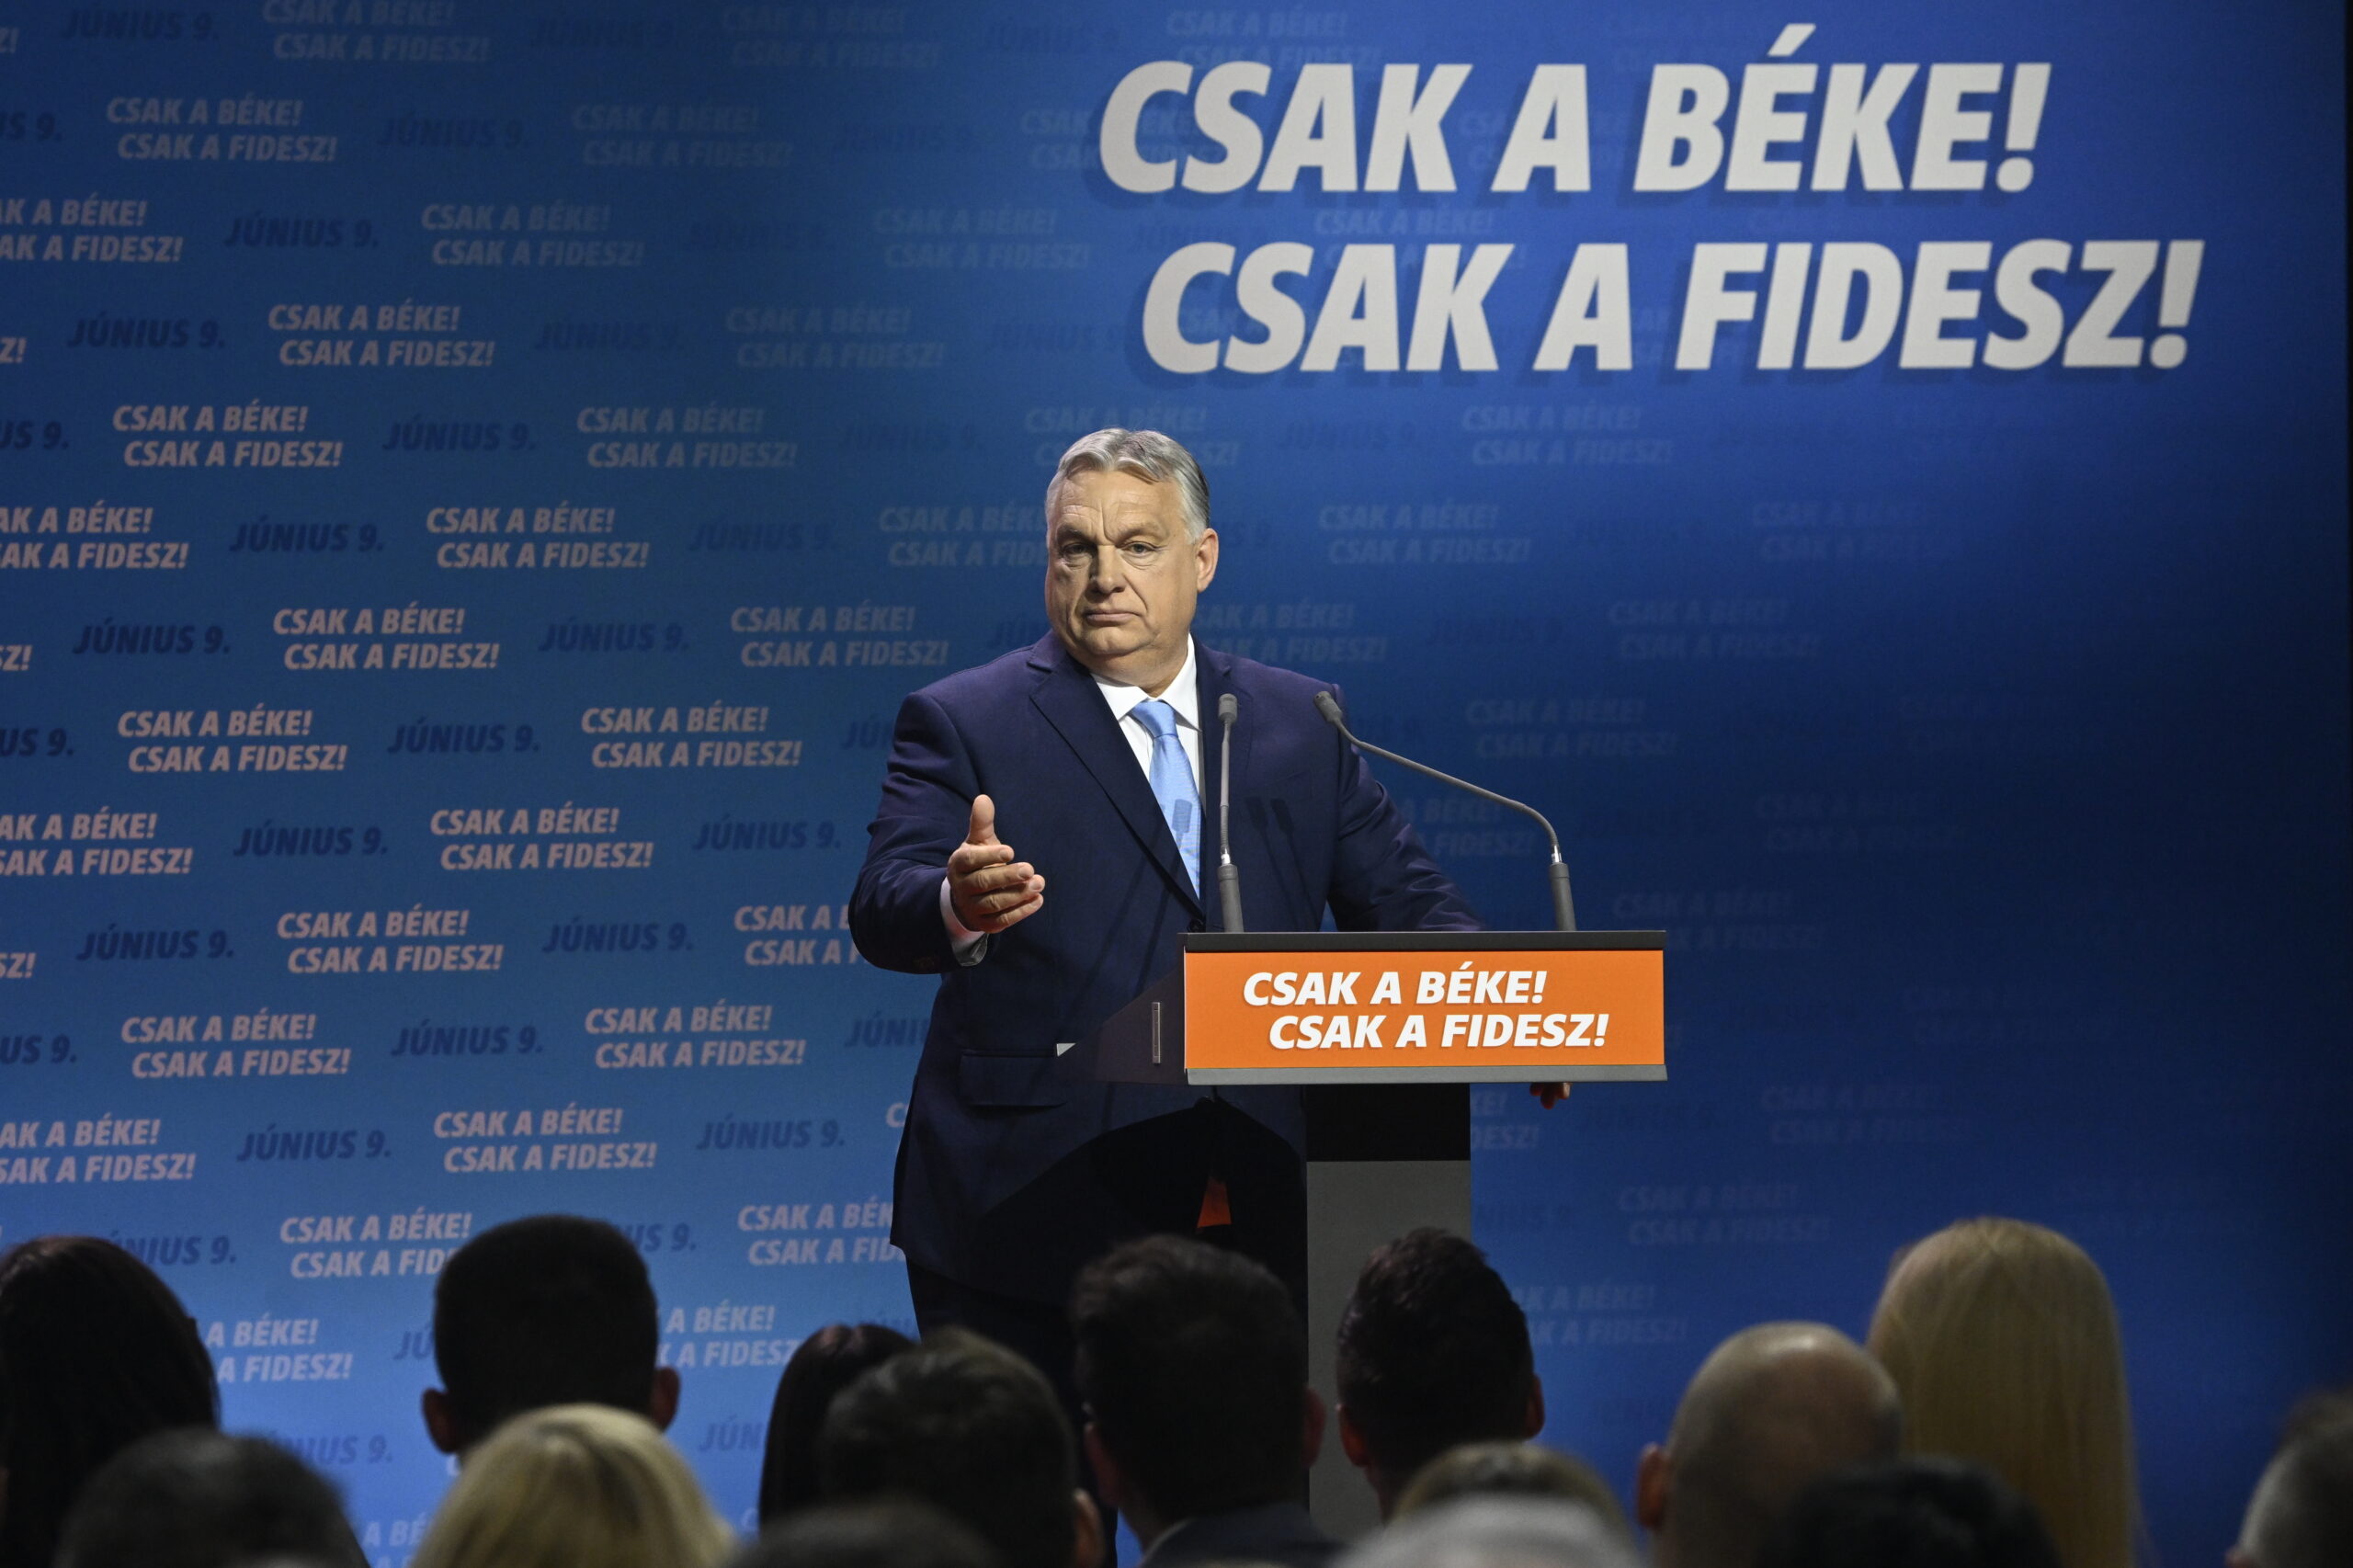 Halálos ítéletet küldtek Orbán Viktornak, bíróság előtt kell felelniük | szmo.hu